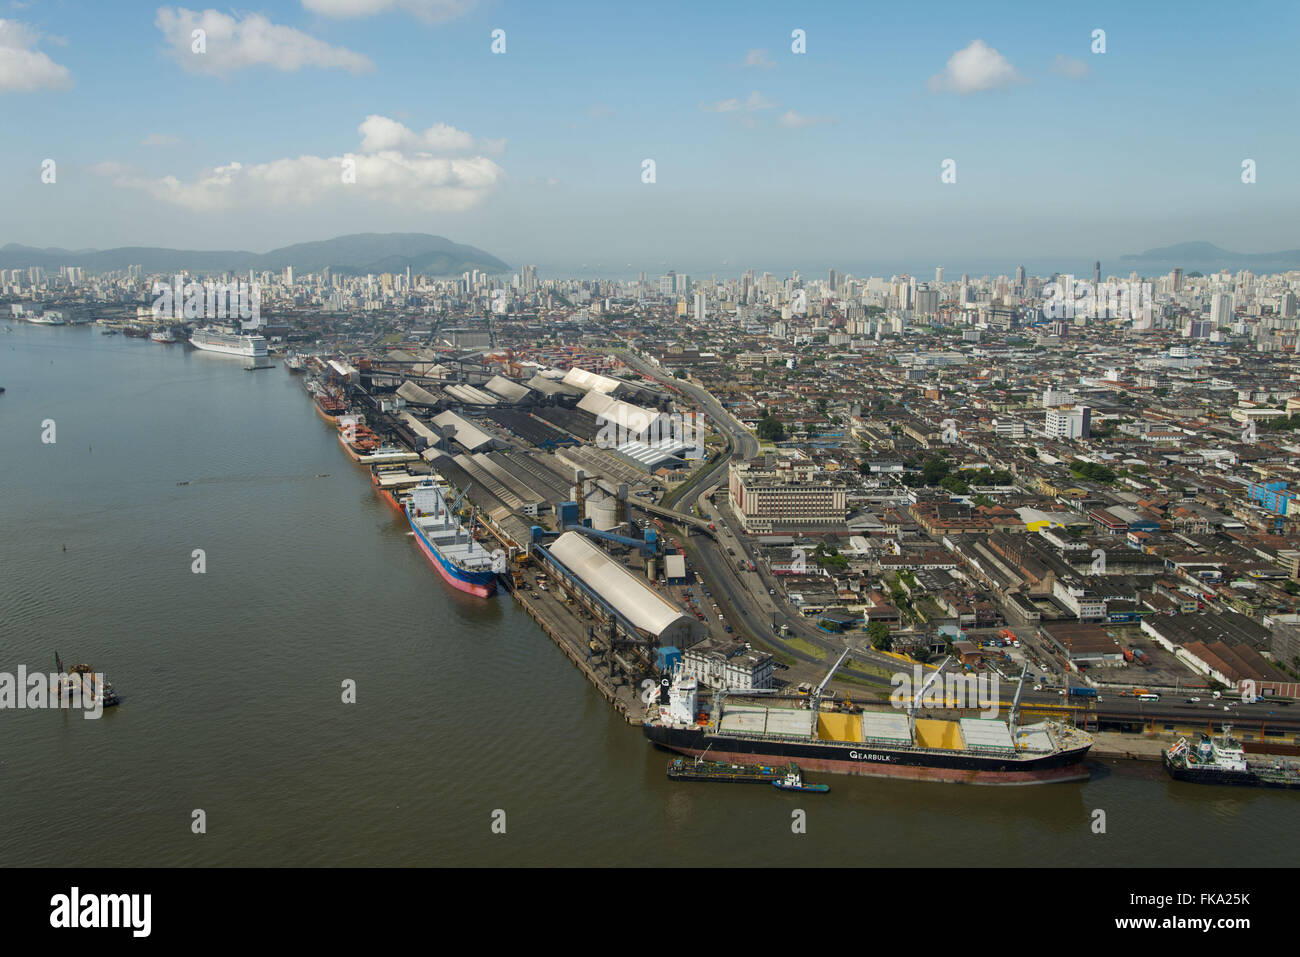 Vista aérea del puerto de Santos con la ciudad al fondo Foto de stock